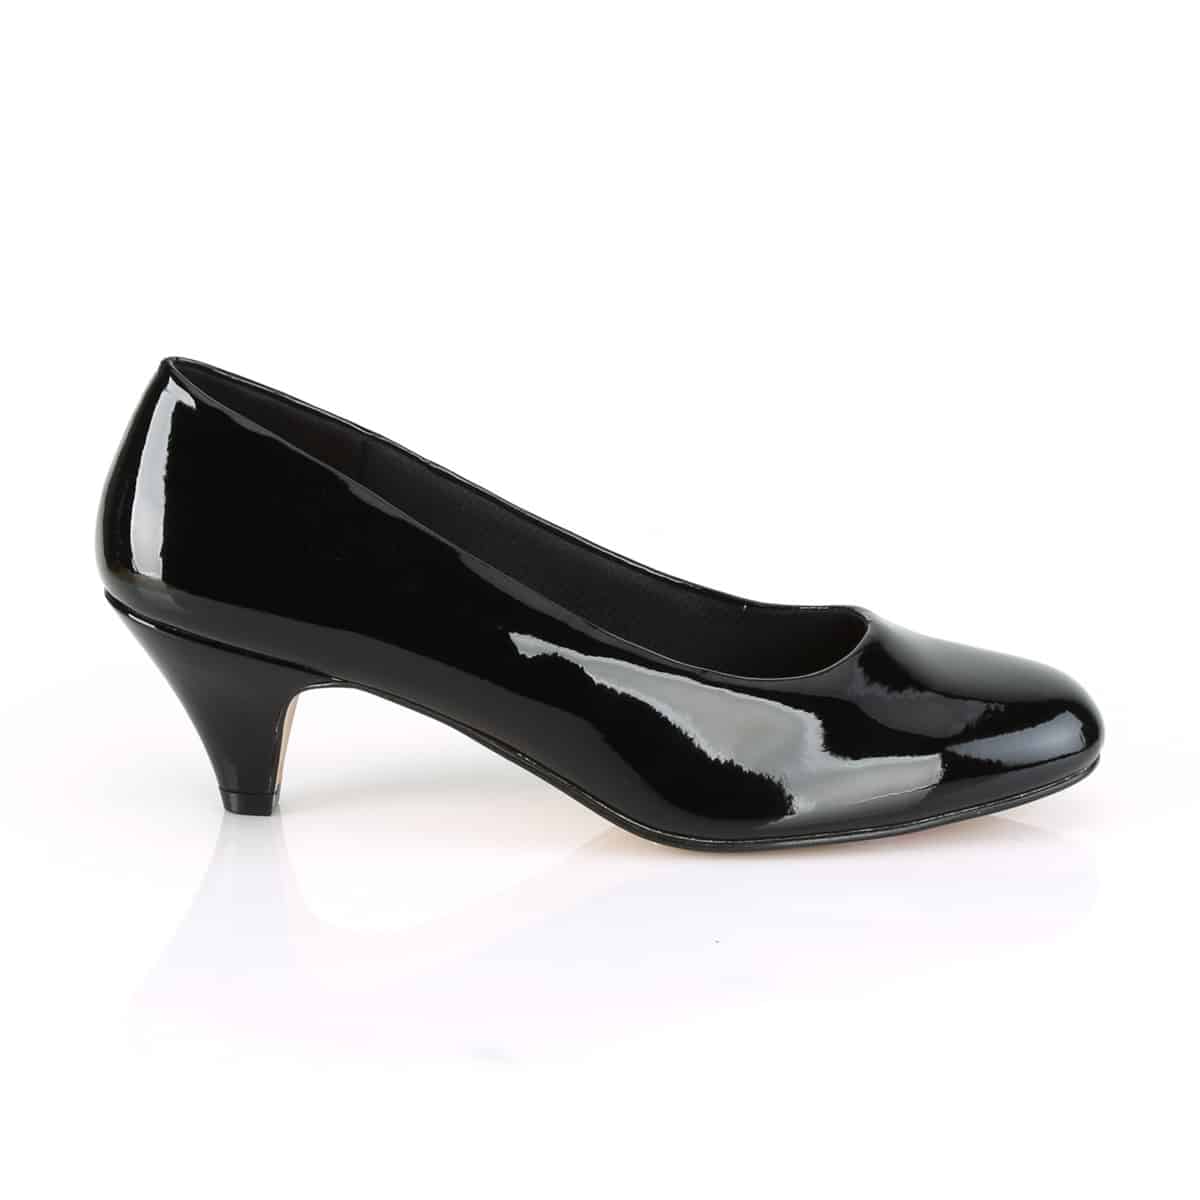 black short high heels